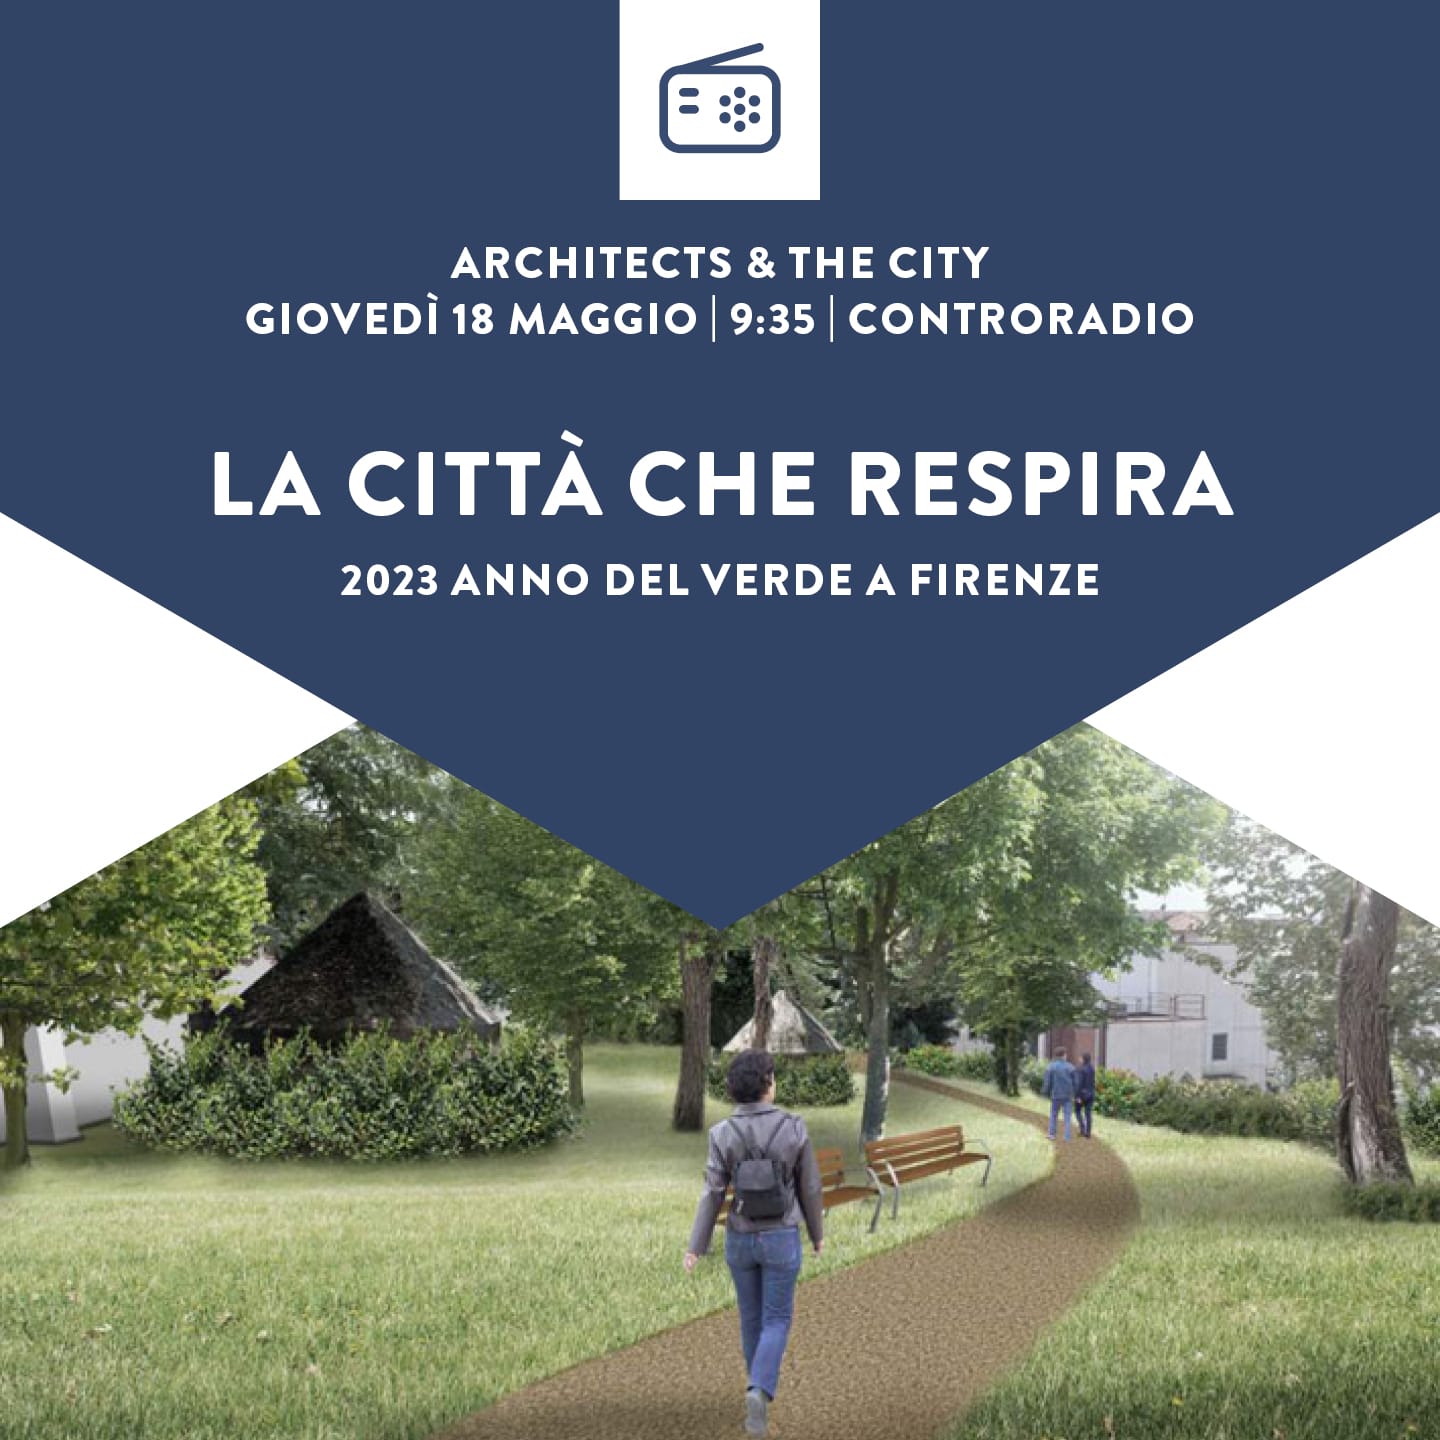 Architects & The City del 18 maggio 2023. La città che respira. Il Piano Operativo di Firenze e la dimensione “verde” – Seconda puntata